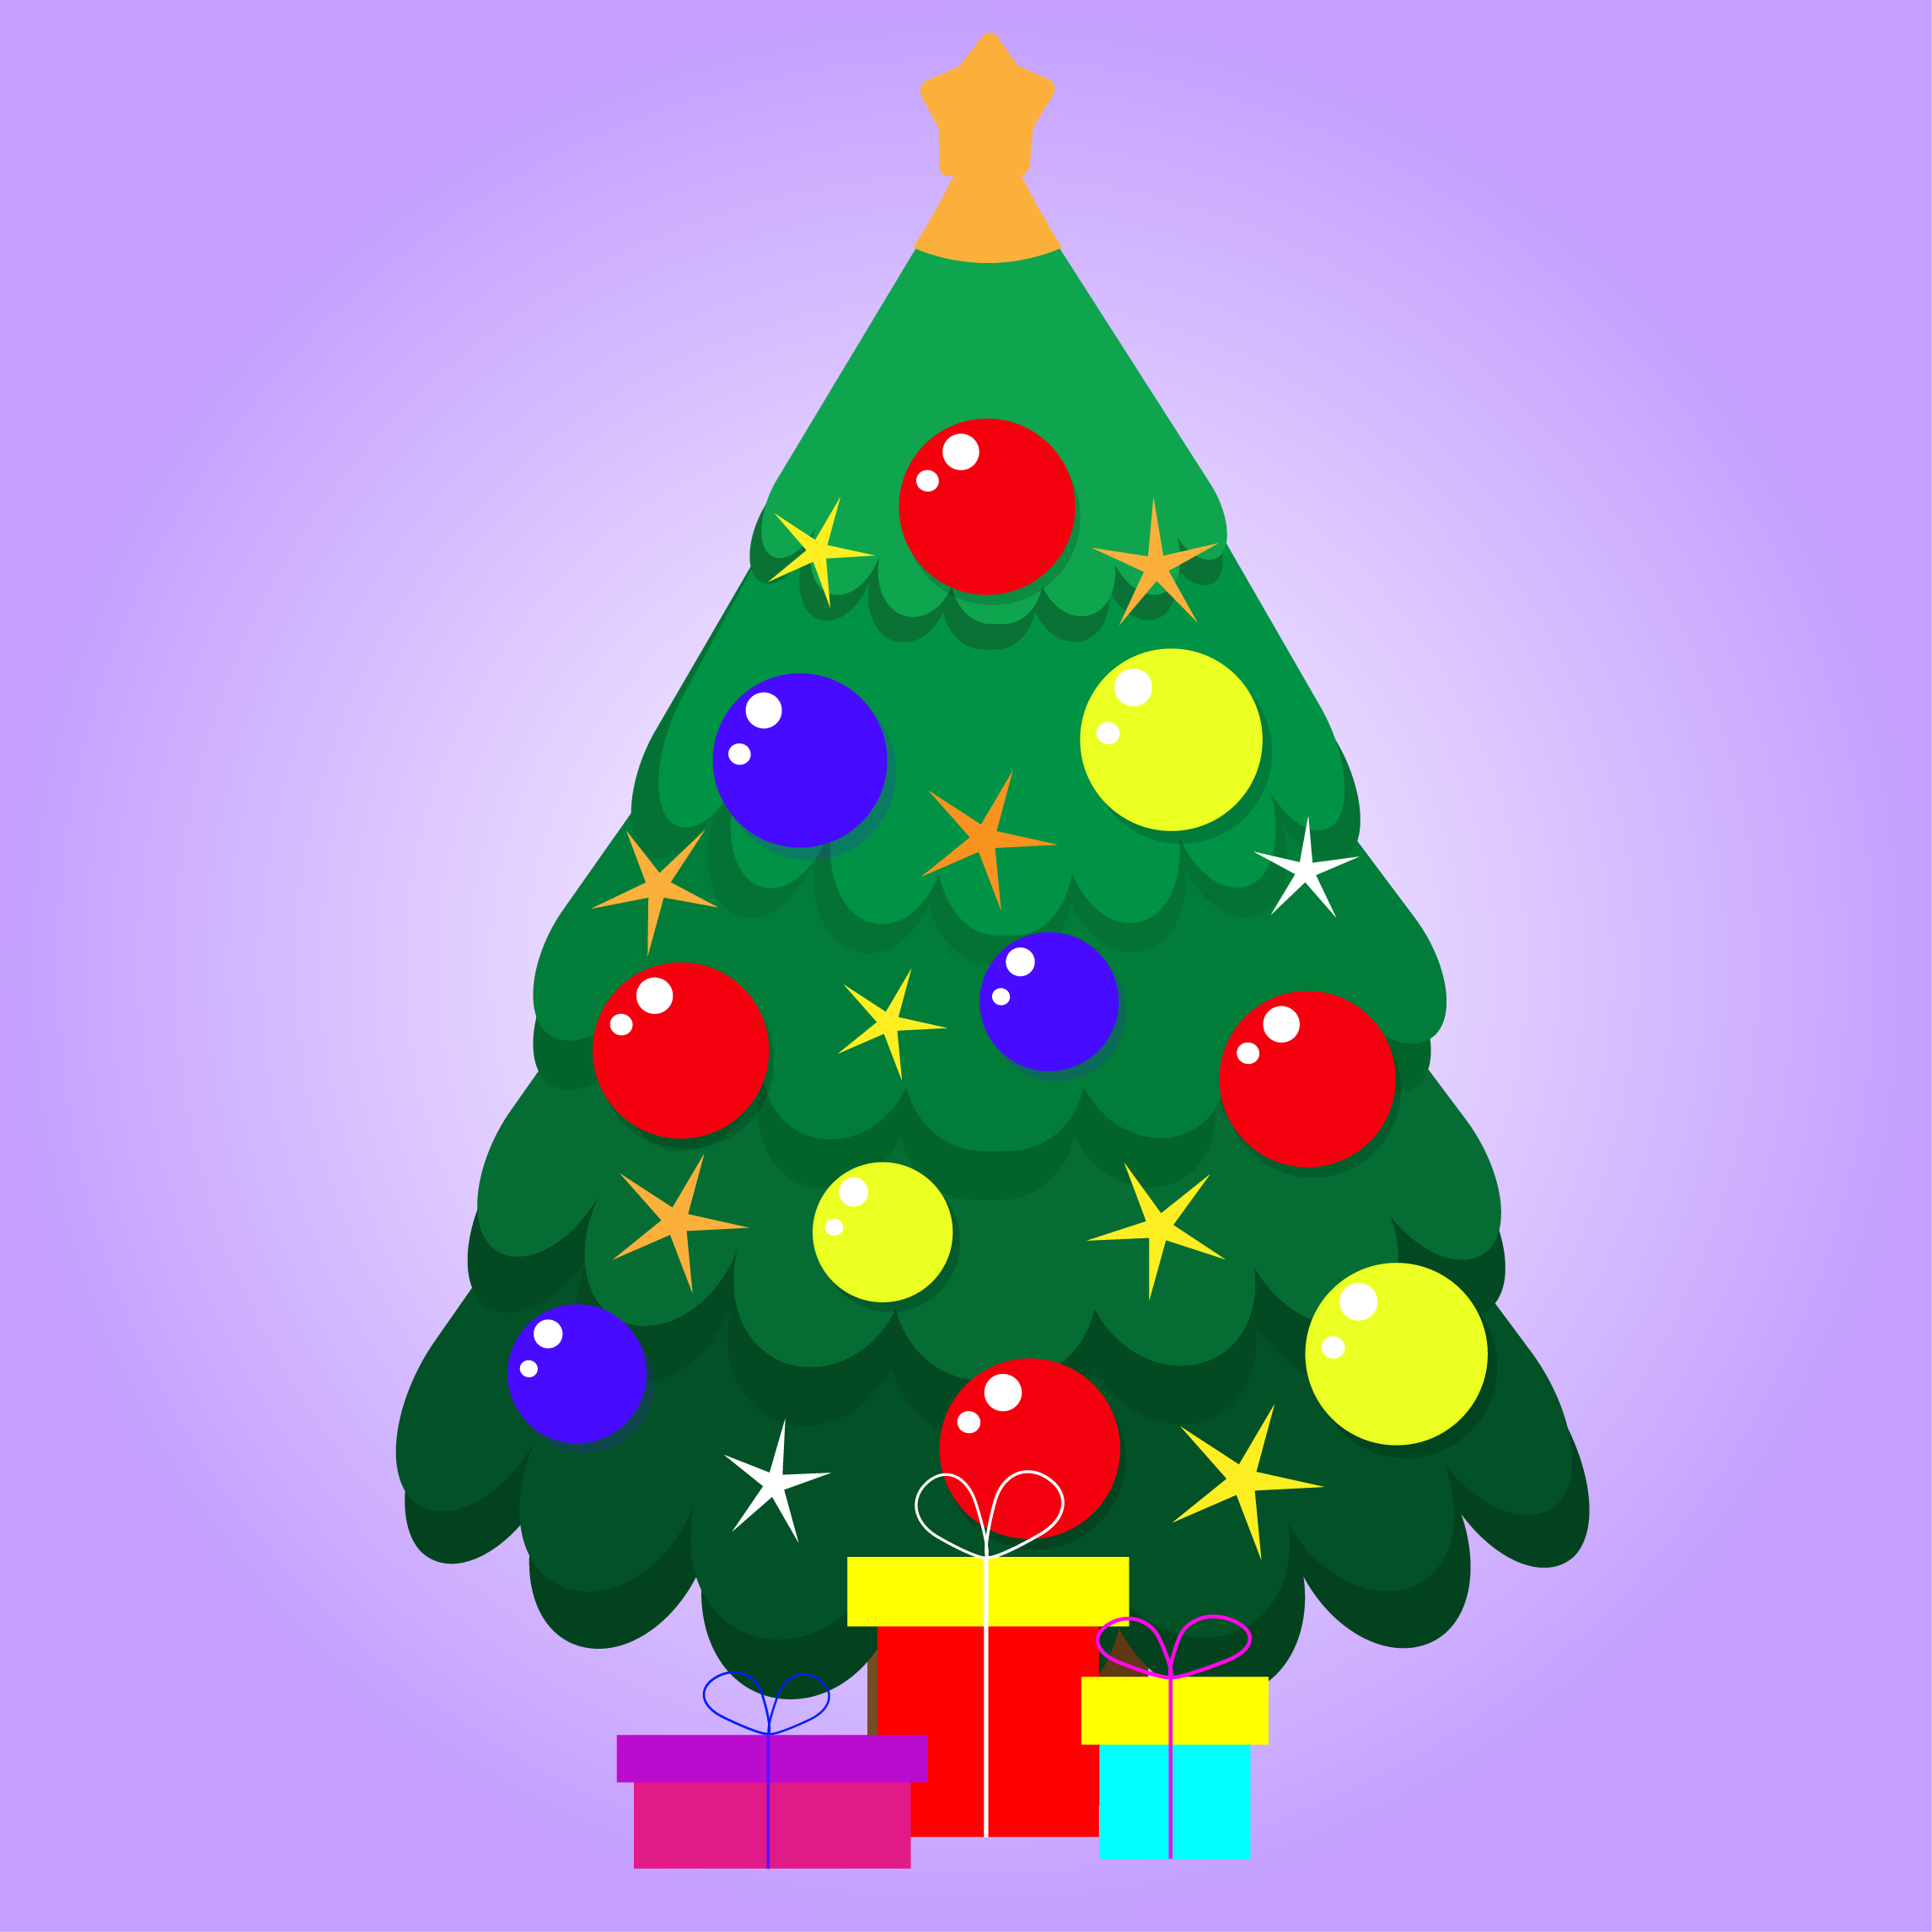 Christmas tree image.